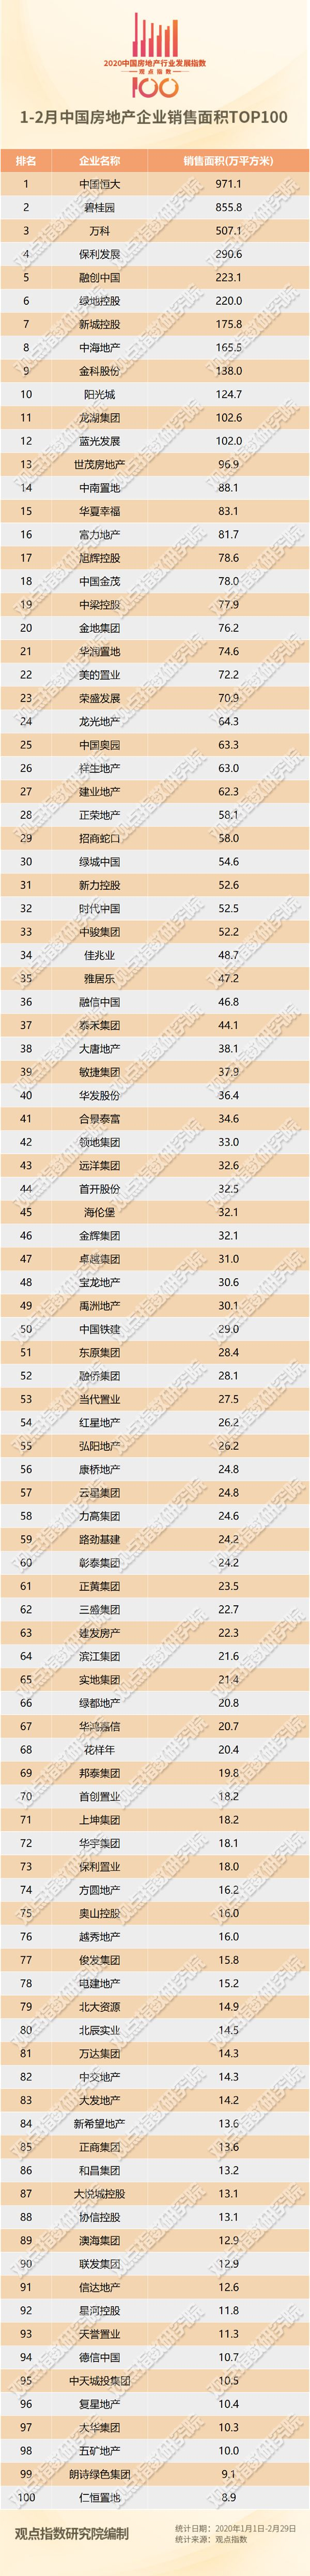 观点指数·2020年1-2月中国房地产企业销售面积100